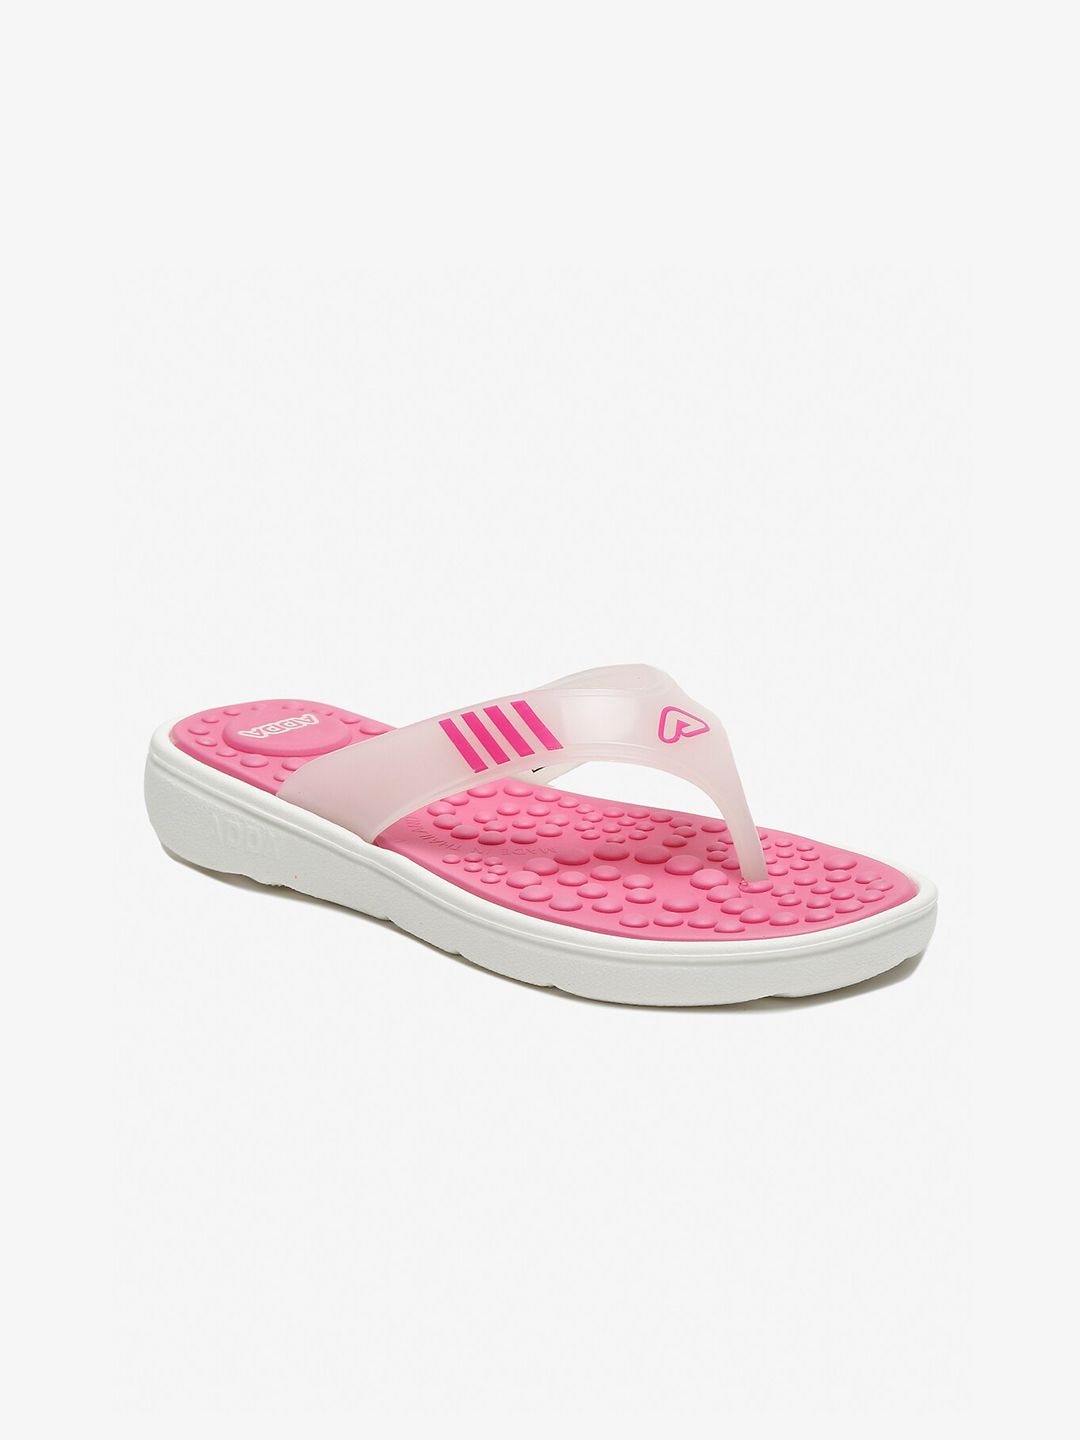 Adda Women Pink & White Self Design Thong Flip-Flops Price in India